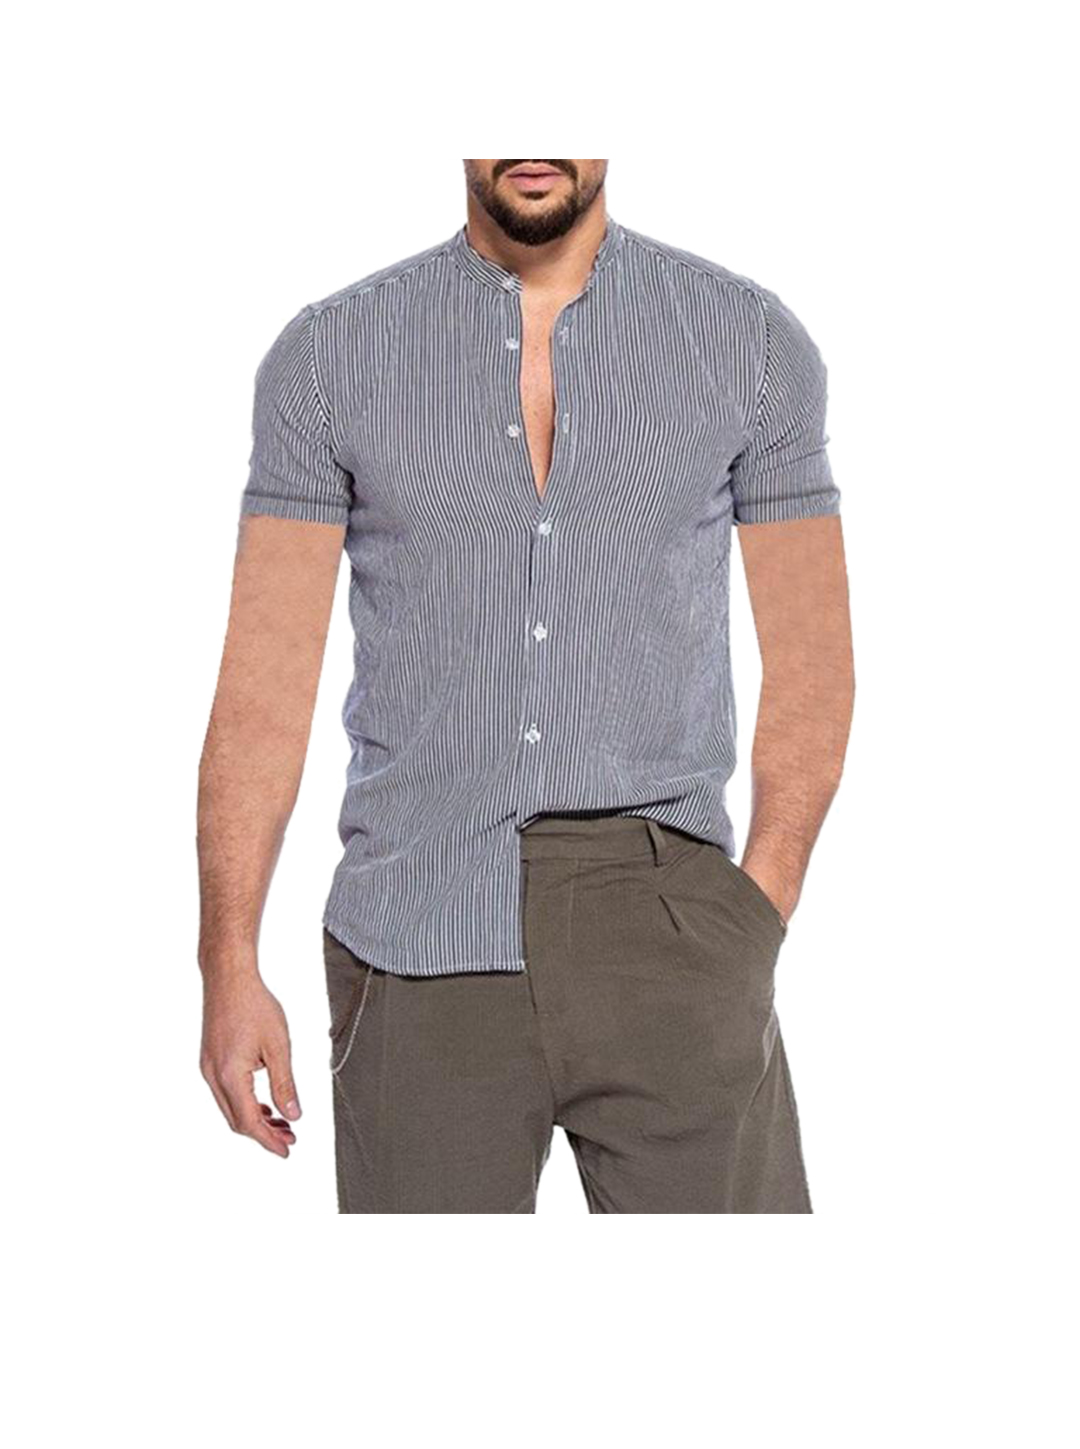 Men's Gerald Striped Short Sleeve Shirt-poisonstreetwear.com